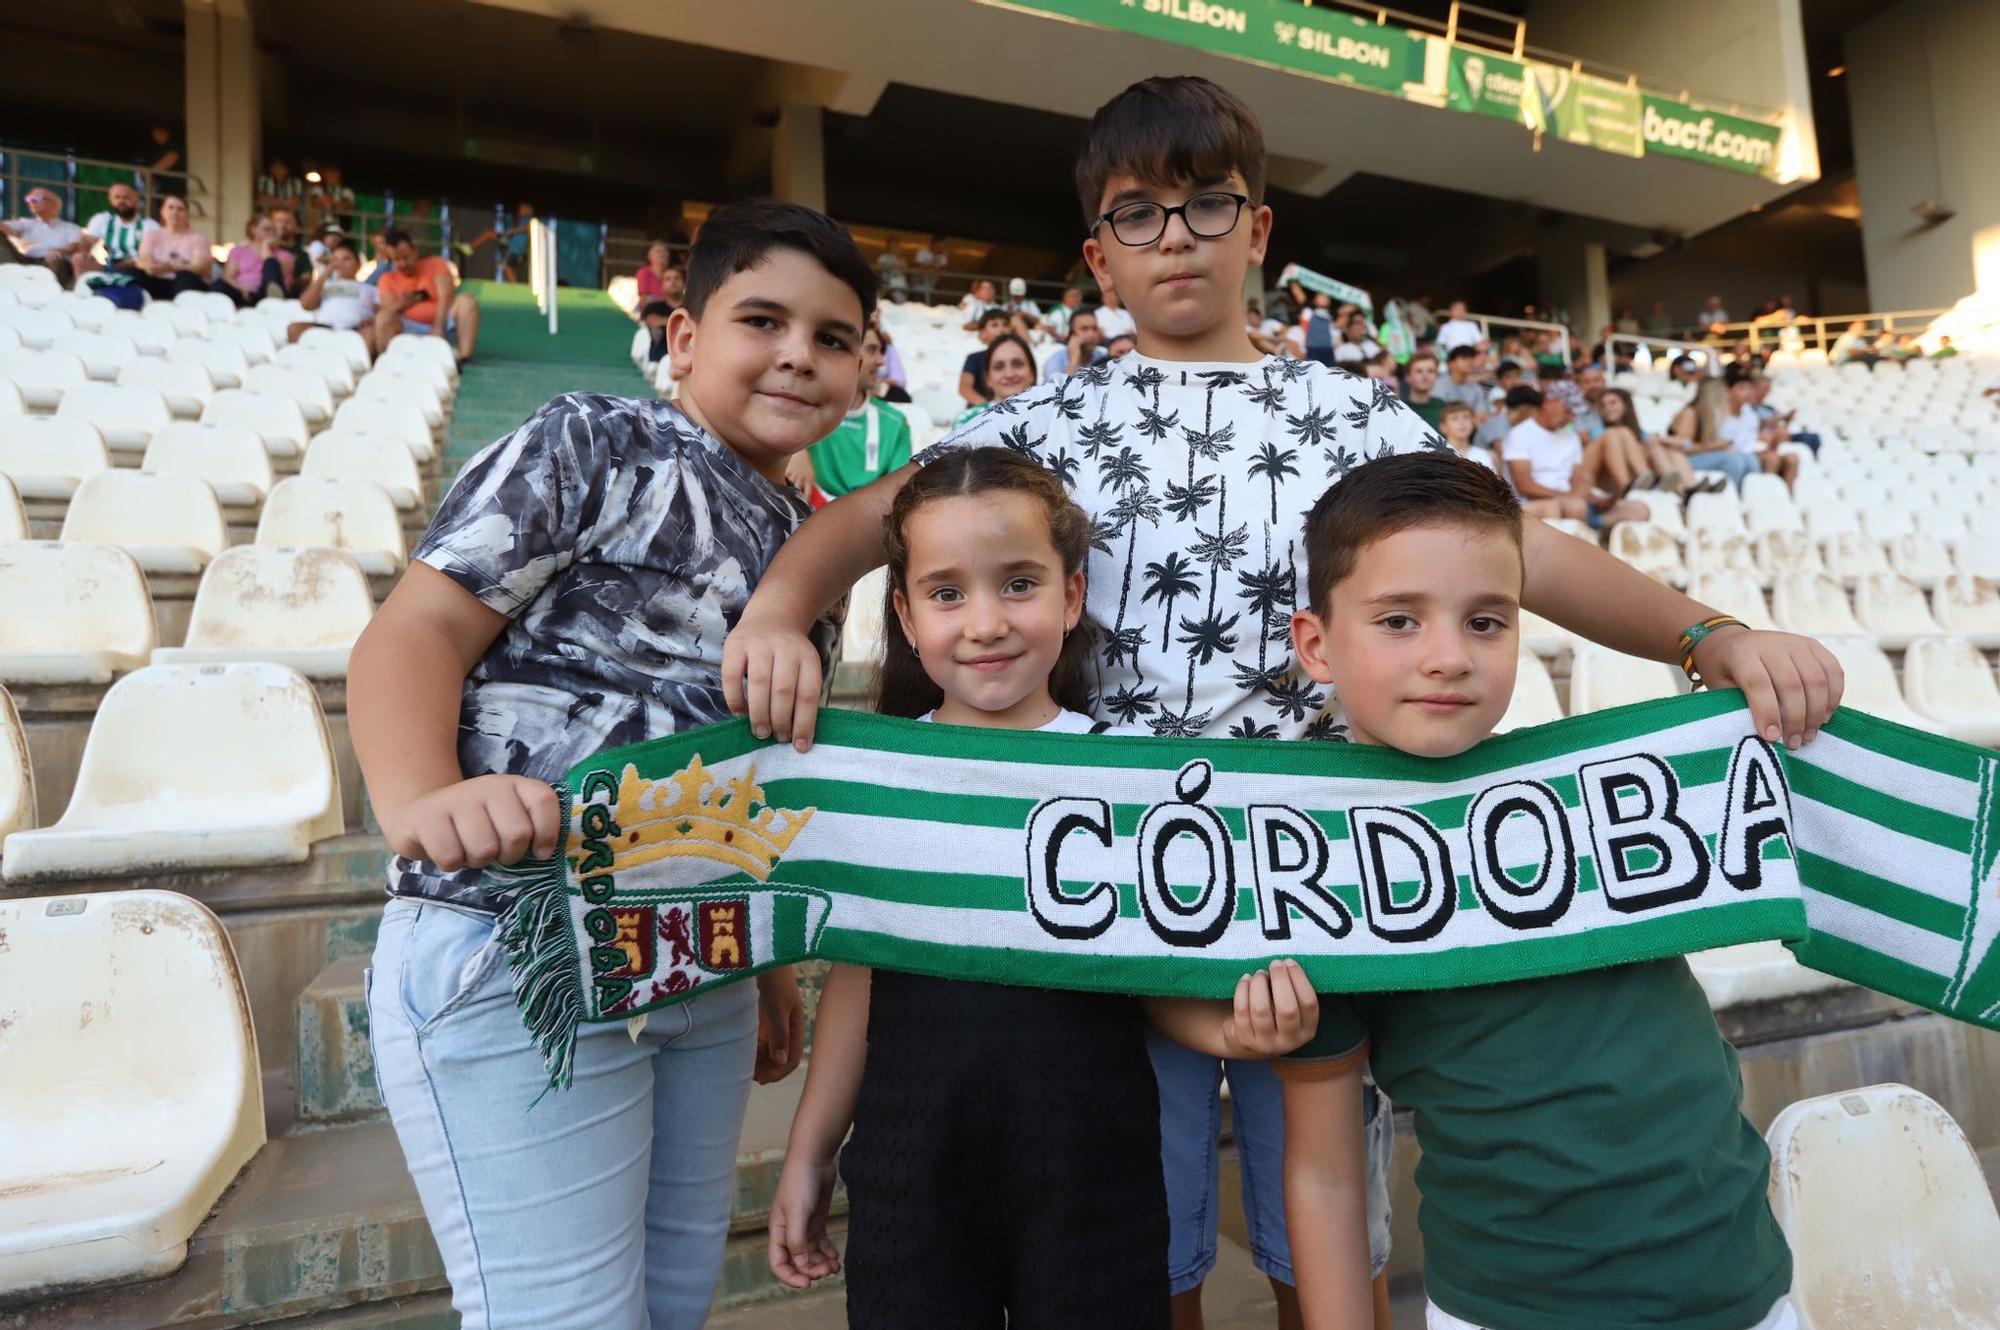 Córdoba CF - Recreativo Granada : las imágenes de la afición en El Arcángel